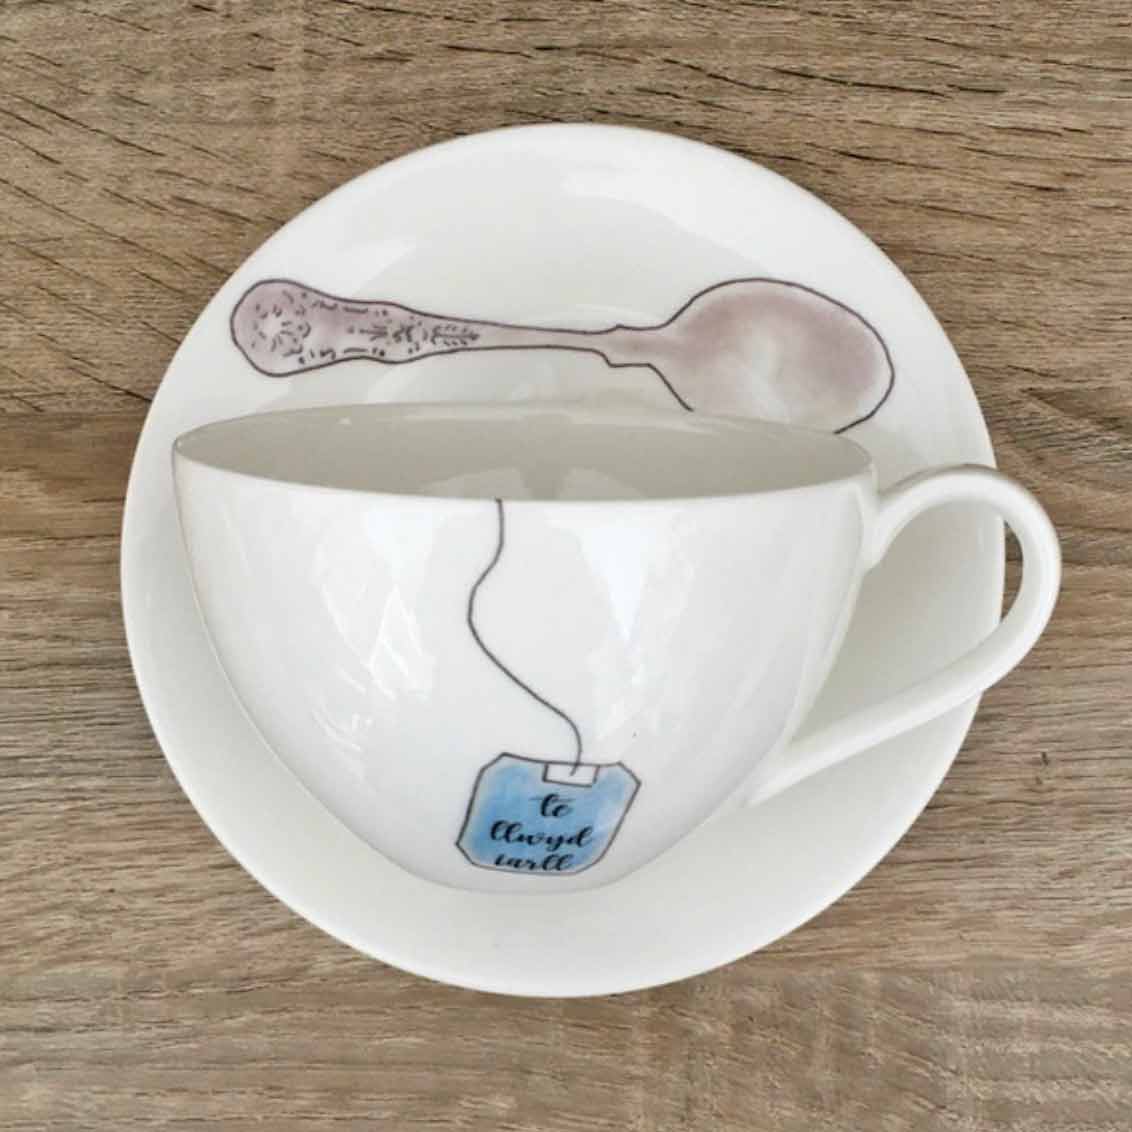 Cup & Saucer- Teabag - Te Iarll Llwyd / Earl Grey Tea - XL